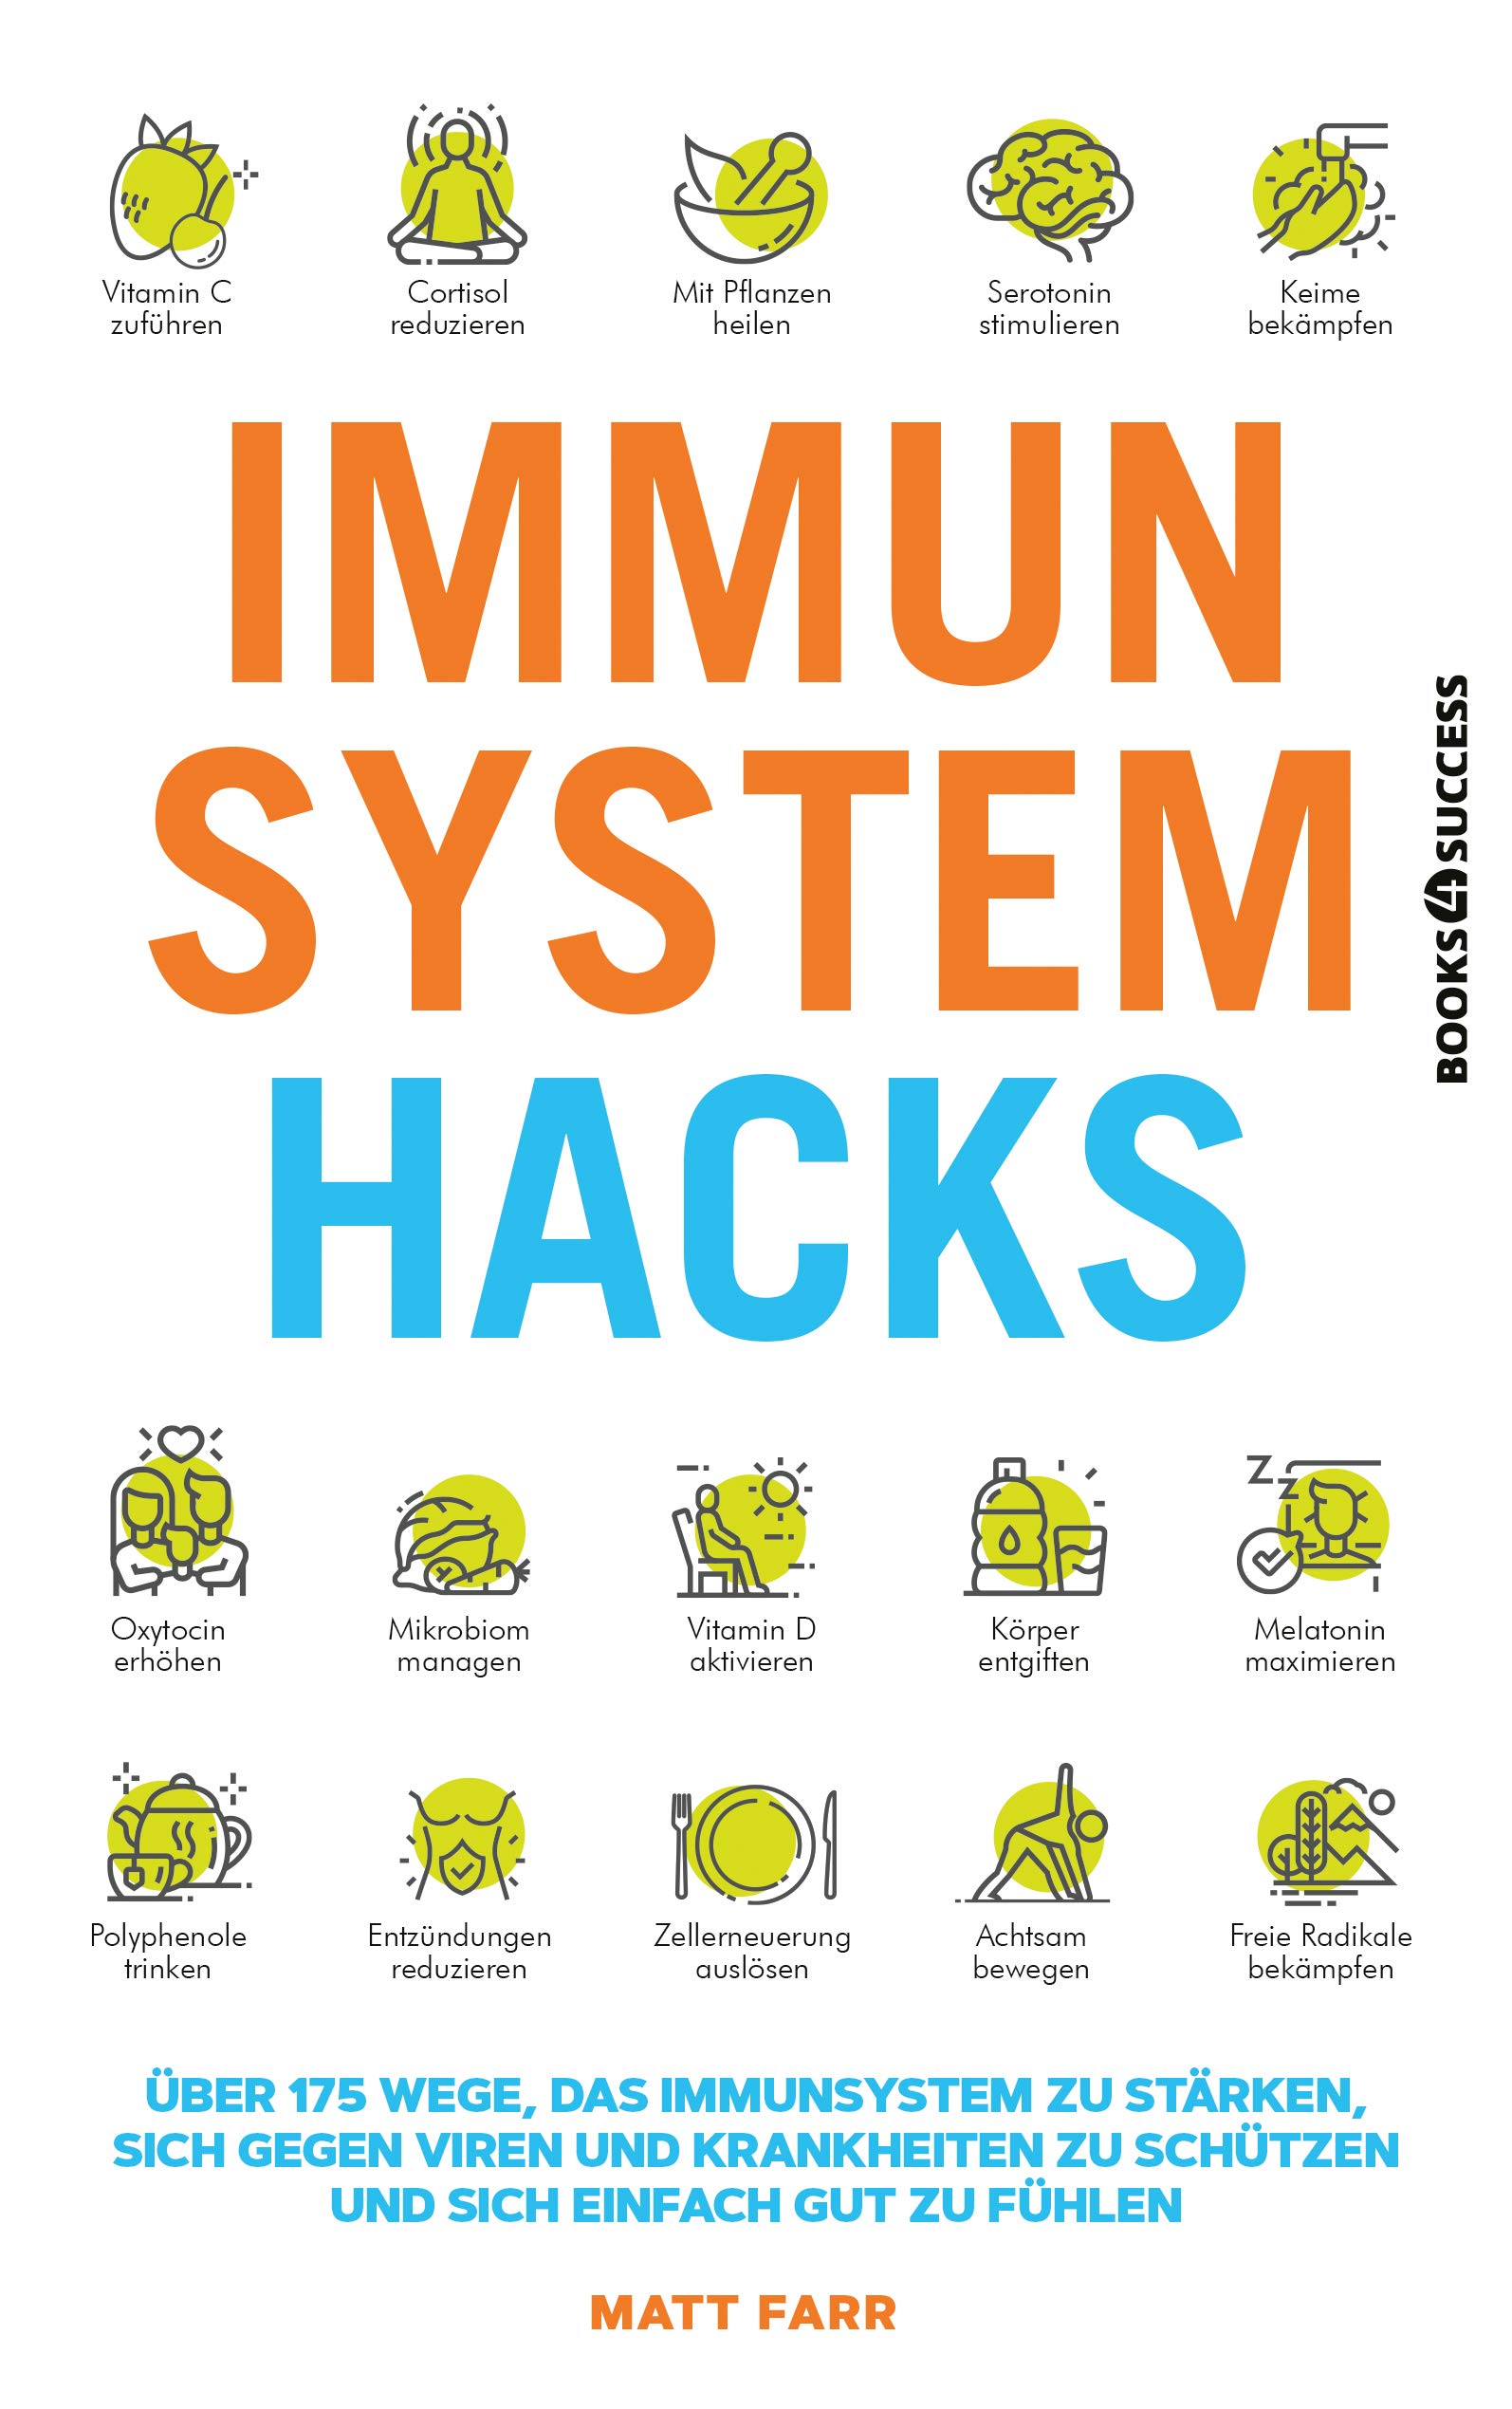 Buchcover: Matt Farr: Immunsystem Hacks. Plassen